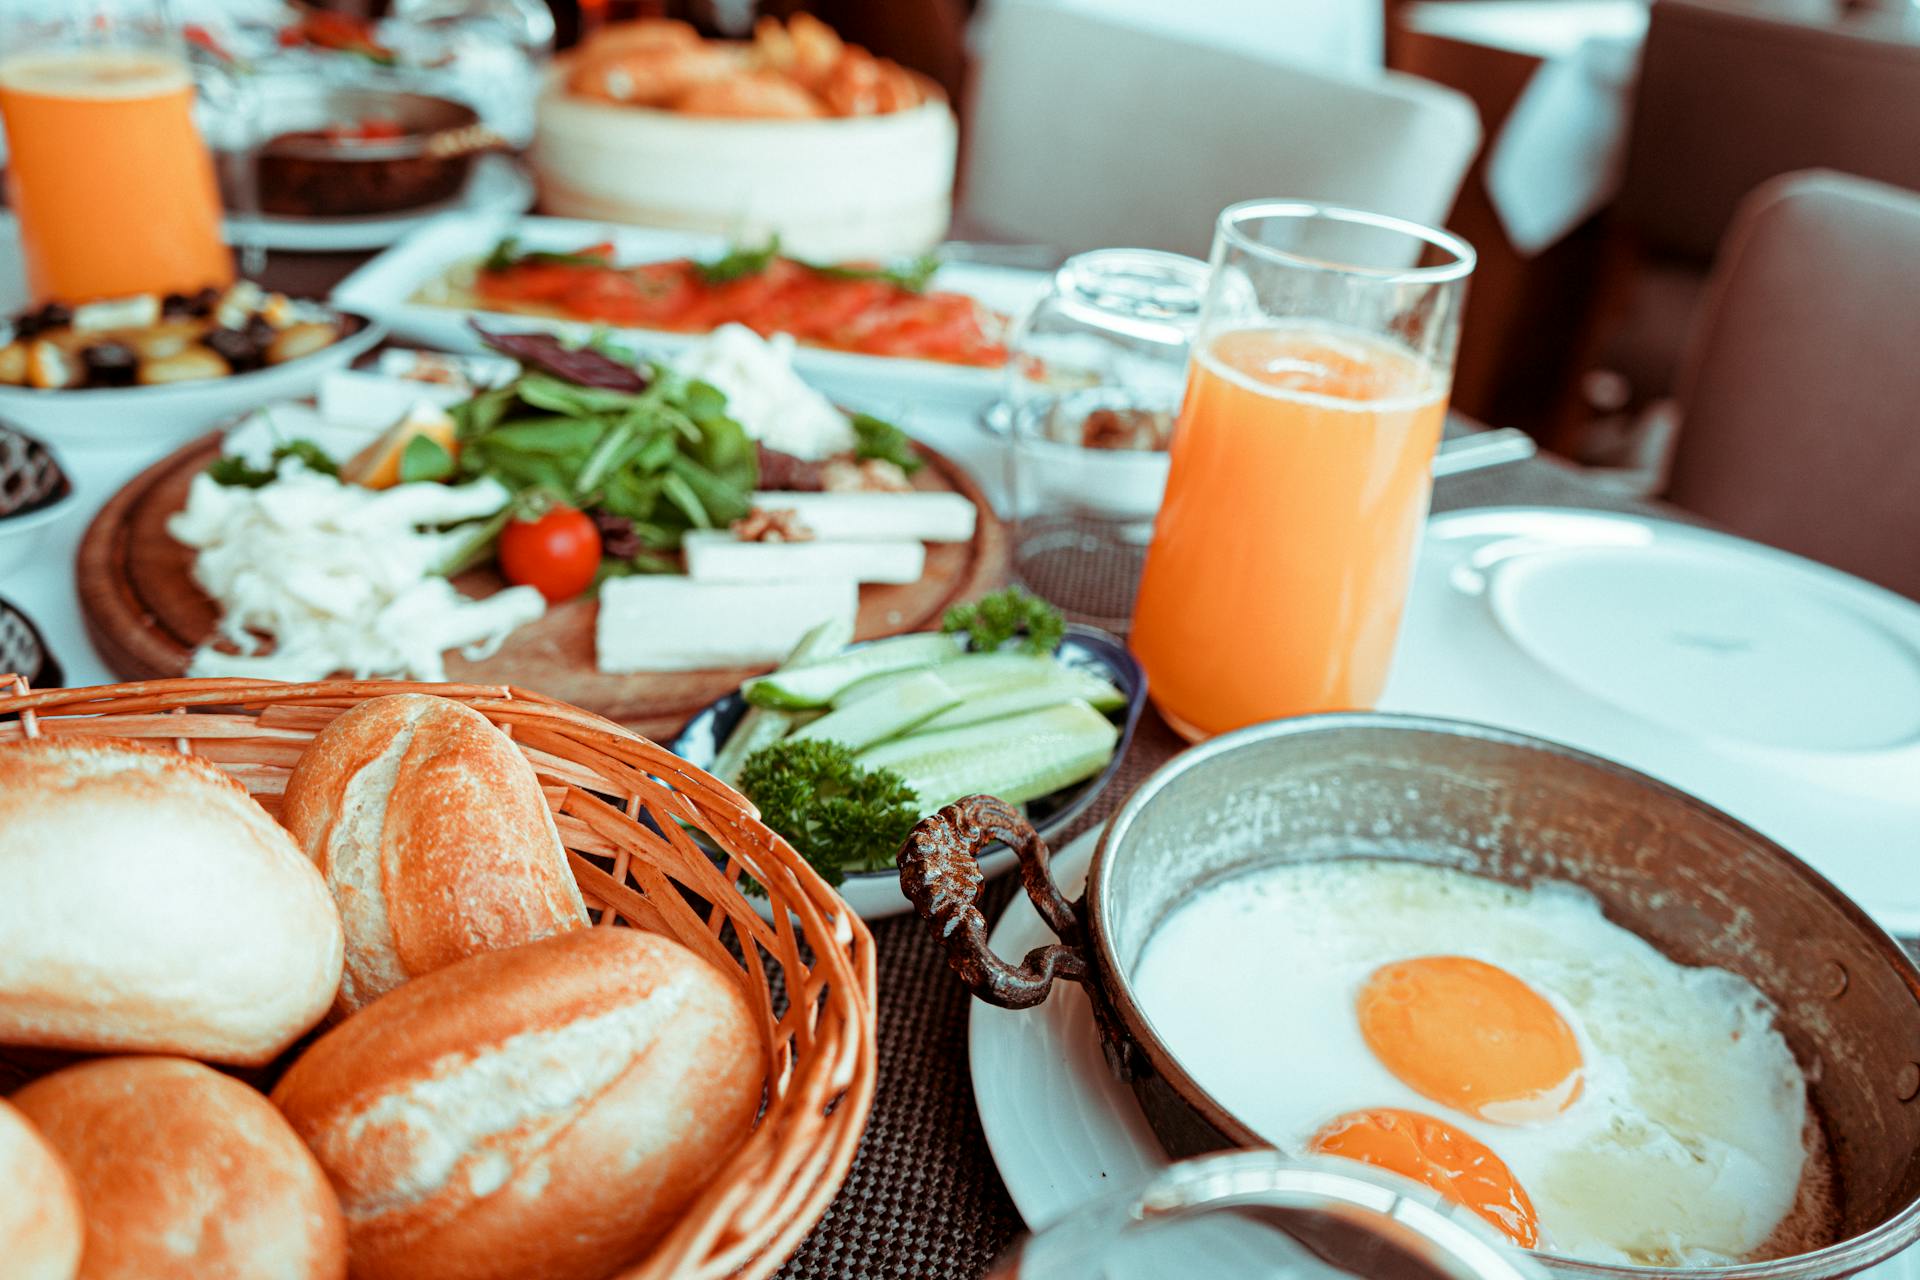 Desayuno servido en la mesa | Fuente: Pexels